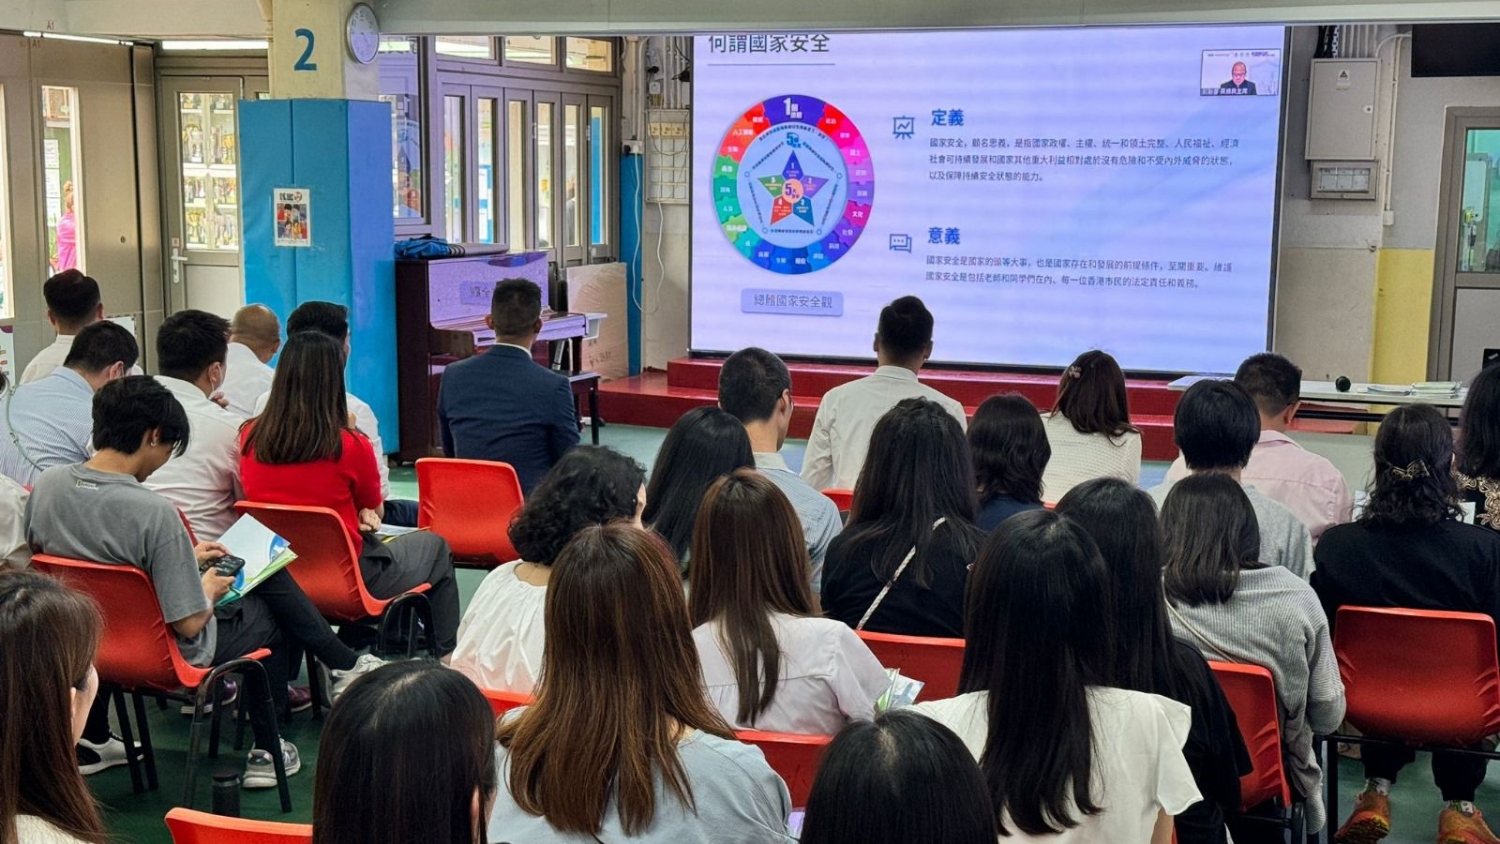 鄧炳強等主講國家安全線上講座 逾140間學校師生參與